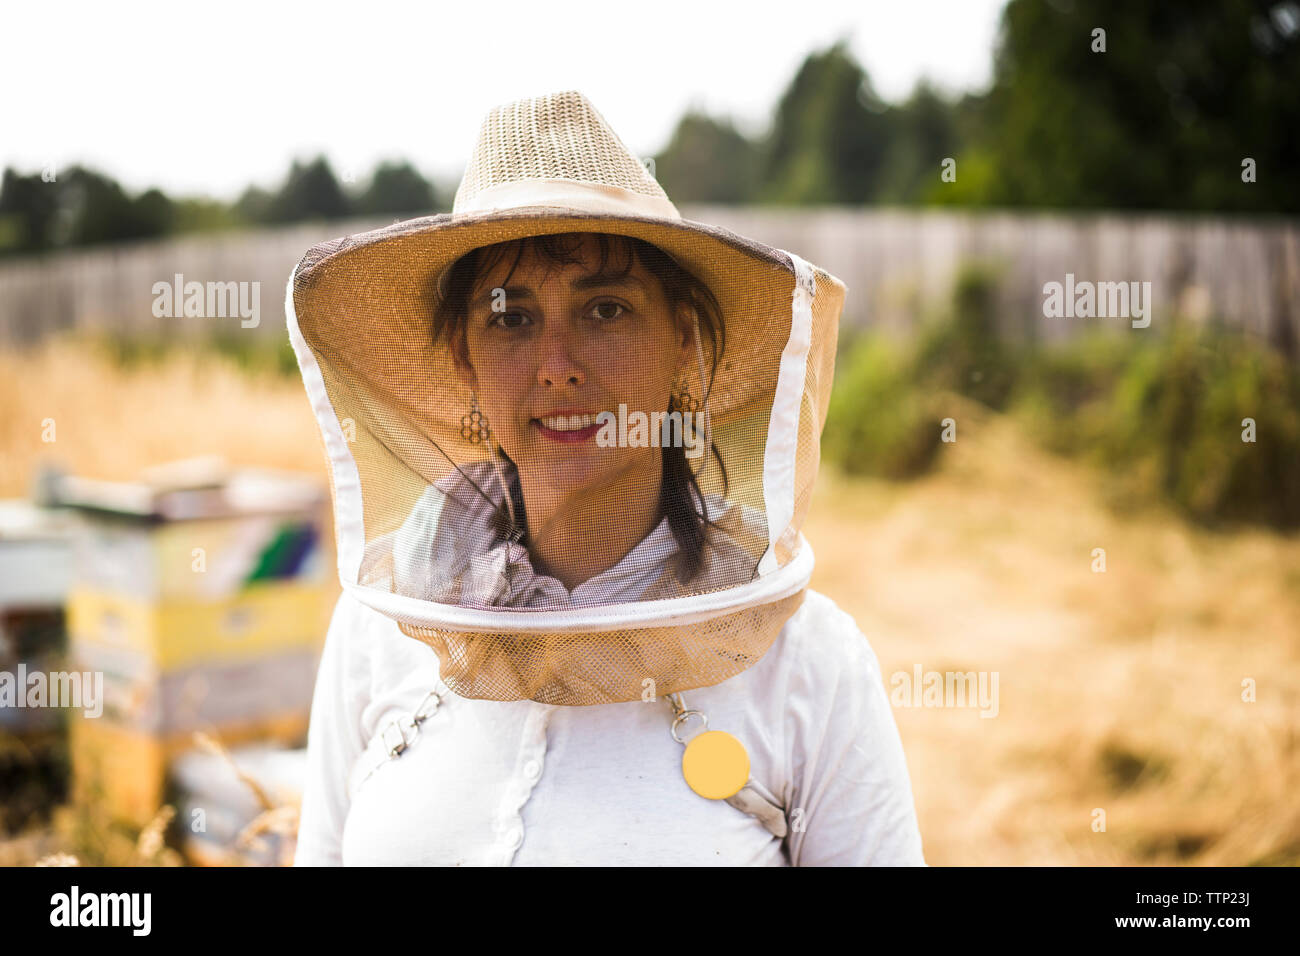 Retrato de mujer vistiendo apicultor máscara protectora y sombrero en el campo Foto de stock